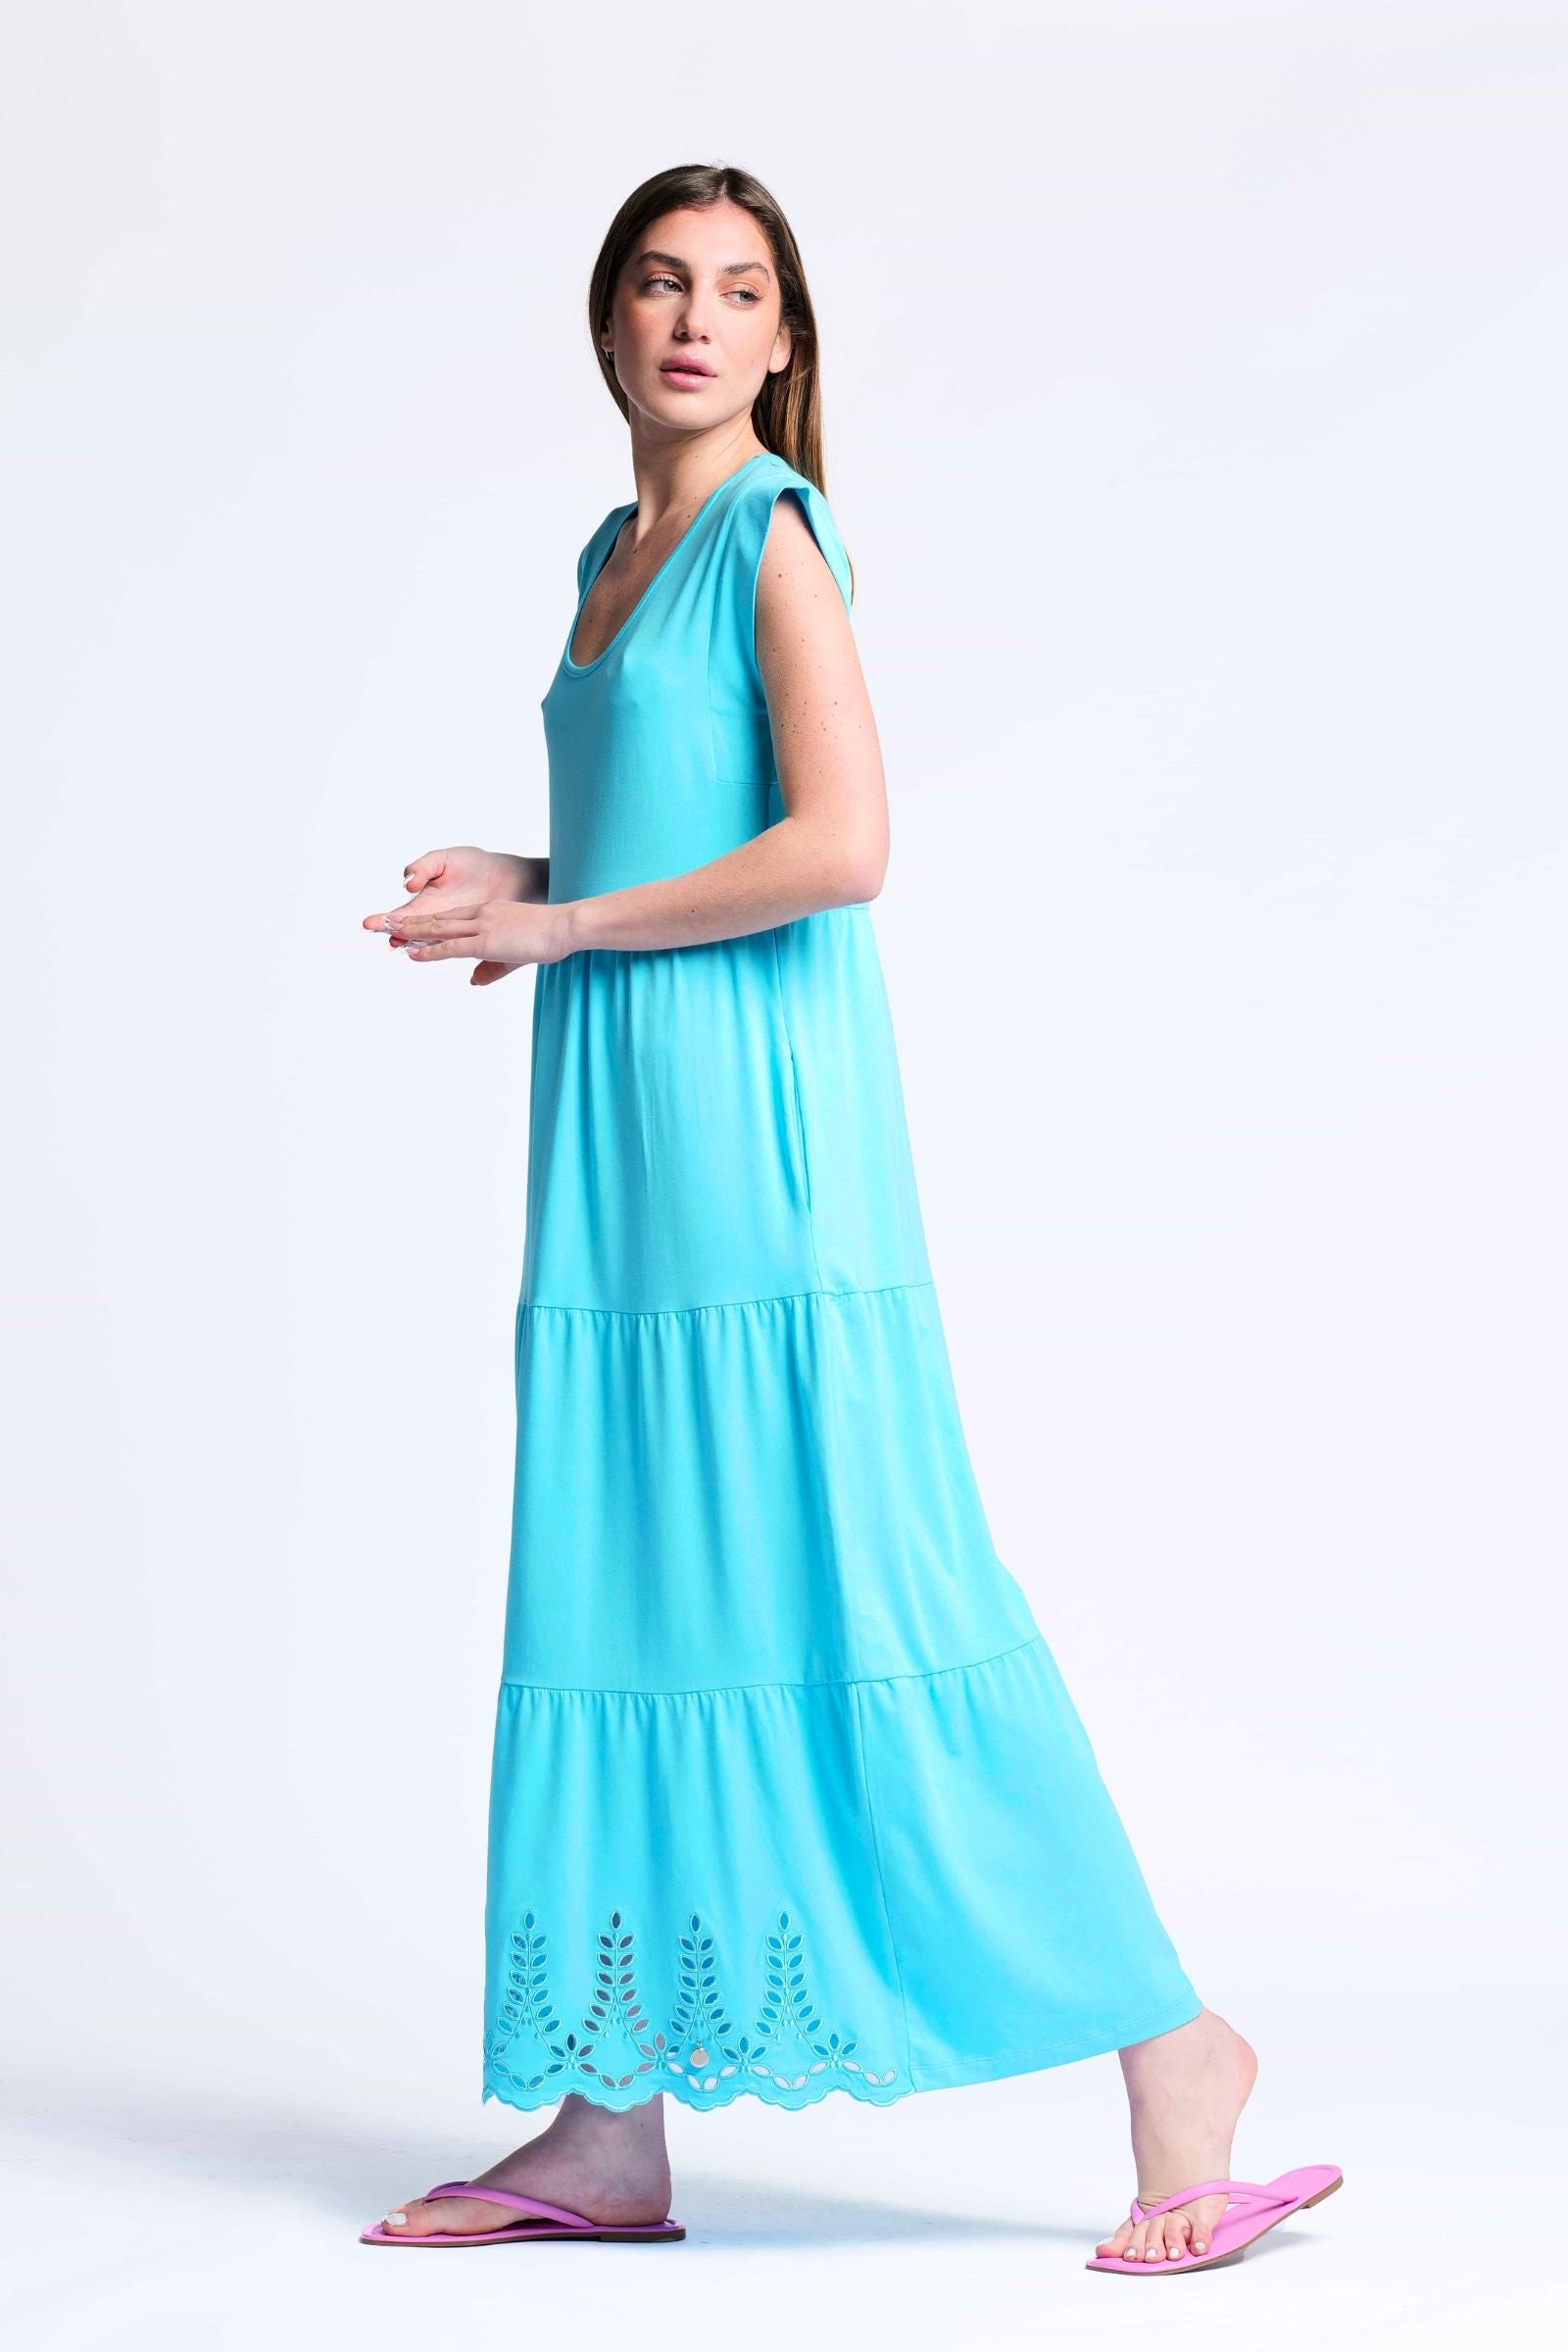 Vestido turquesa algodon largo con bordado al tono Lolitas&L - lolitasyl.com